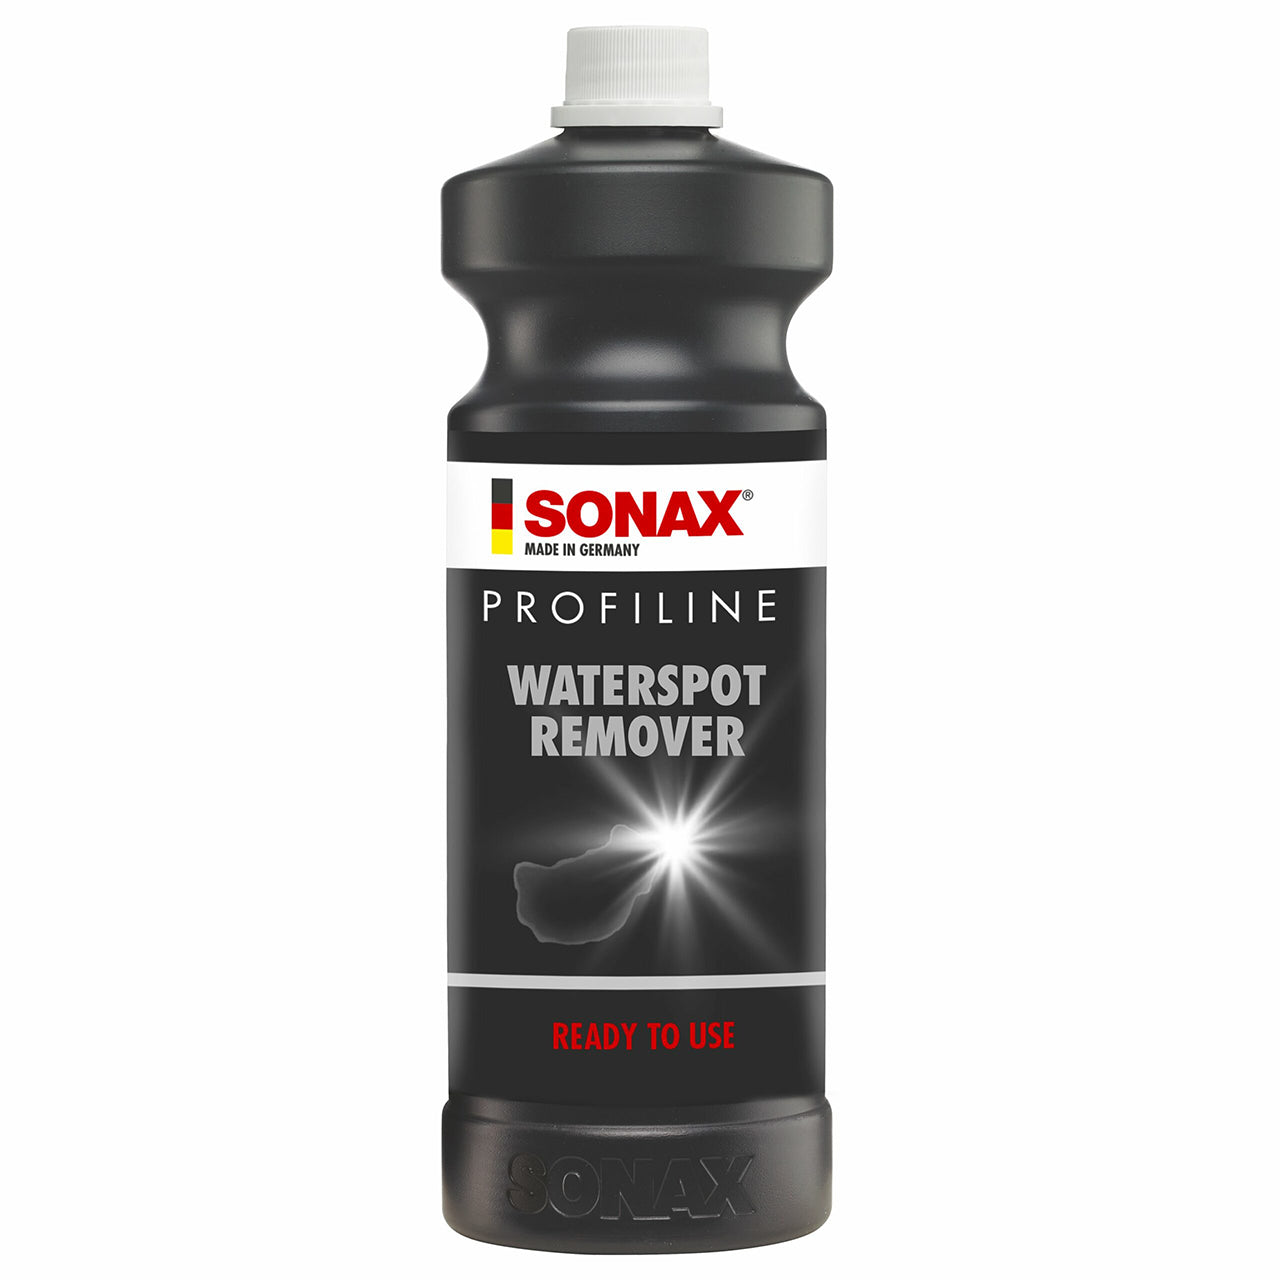 SONAX PROFILINE Waterspot Remover 1L